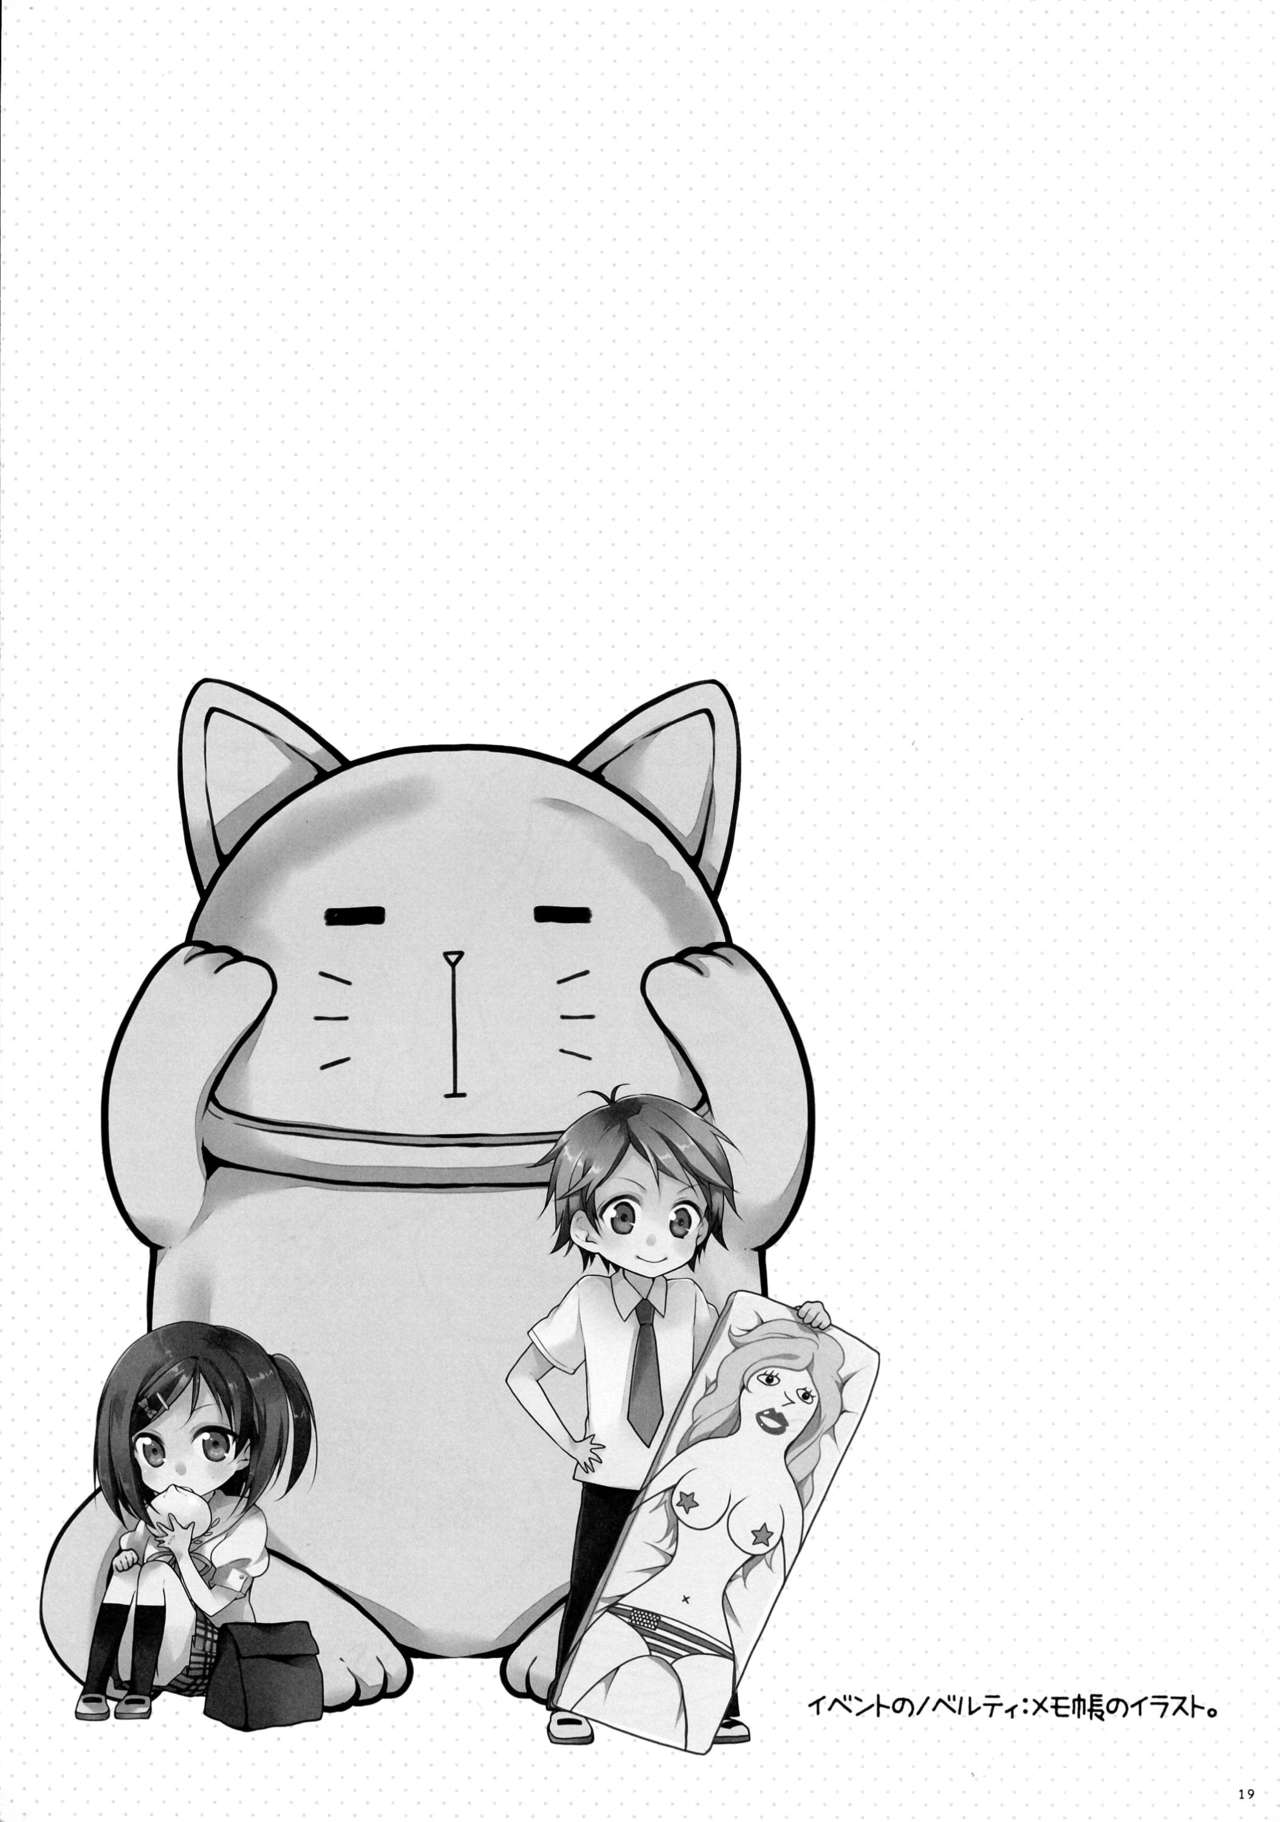 (COMIC1☆7) [MeroMero Melon (Ou, Peke)] Hentai Ouji to Hazukashii Neko. (Hentai Ouji to Warawanai Neko.) (COMIC1☆7) [XOXOメロン (おぅ, ぺけ)] 変態王子と恥ずかしい猫。 (変態王子と笑わない猫。)